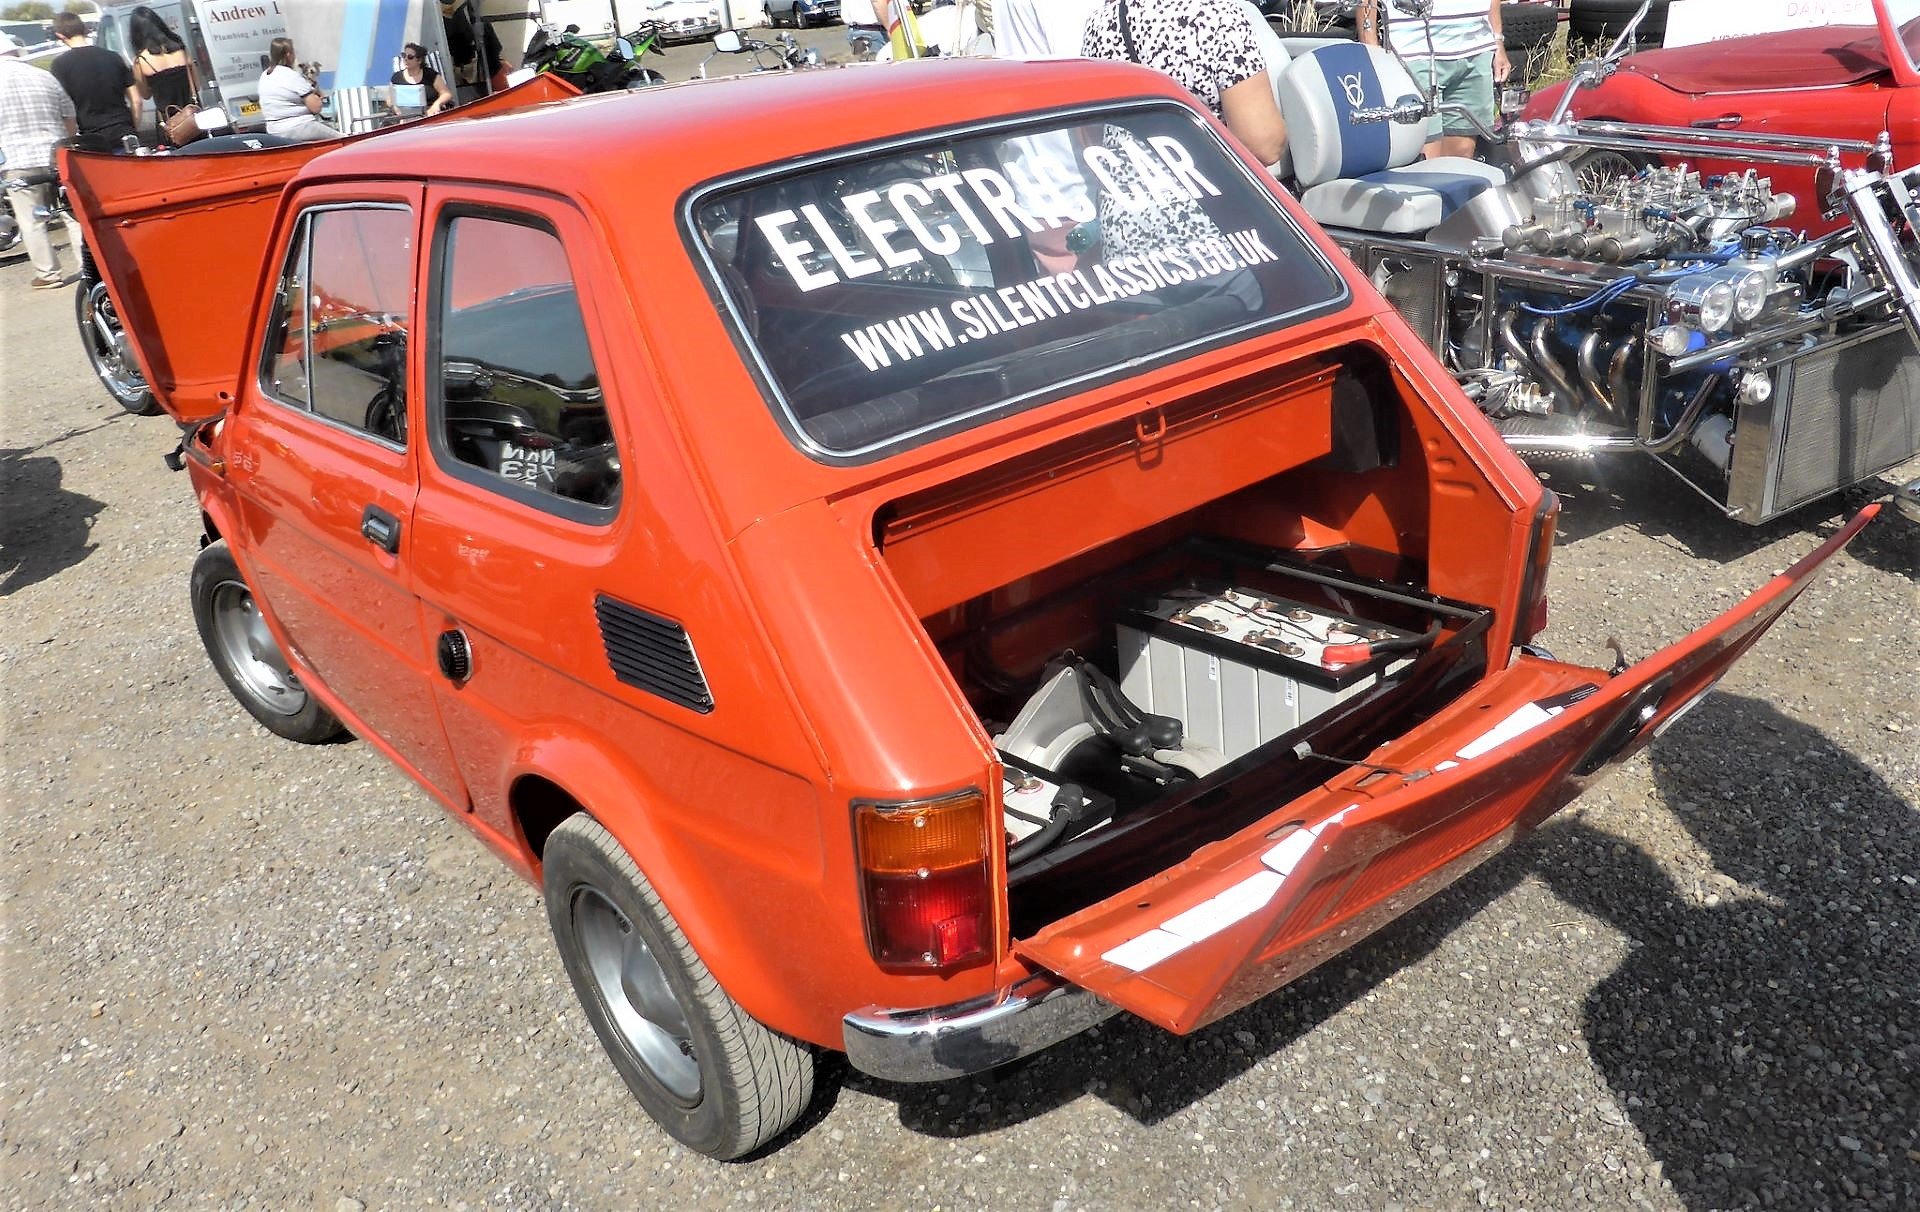 Powiększ obraz: Nie stać Cię na "elektryka"? W modzie są przeróbki. Niejeden już Fiat 126p zyskał napęd elektryczny.